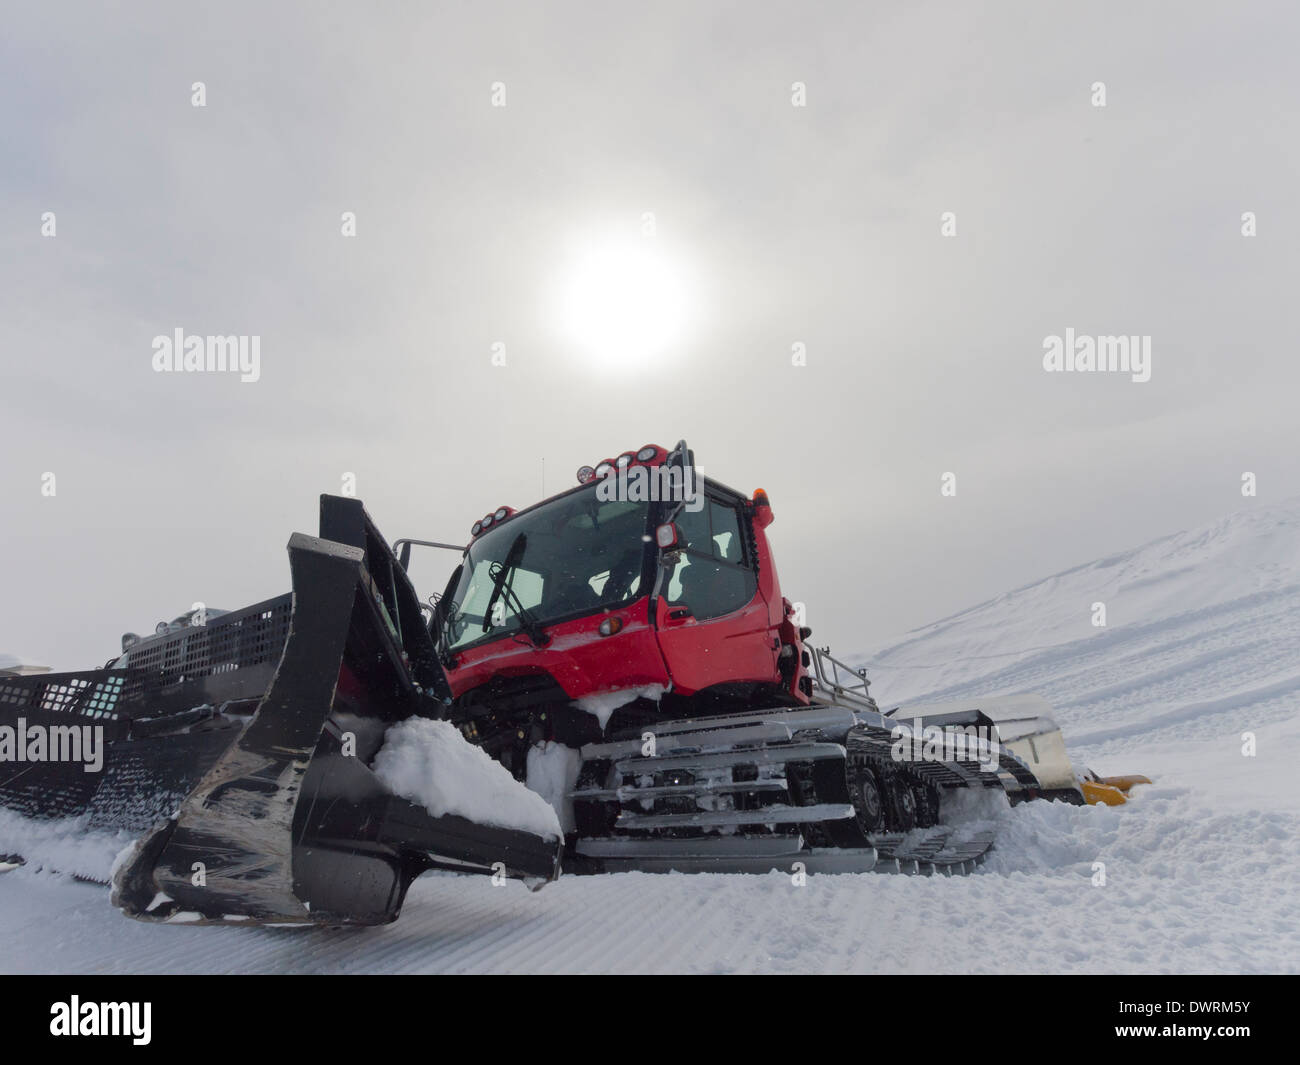 Snowcat for ski slope preparation in a Swiss ski resort. Stock Photo